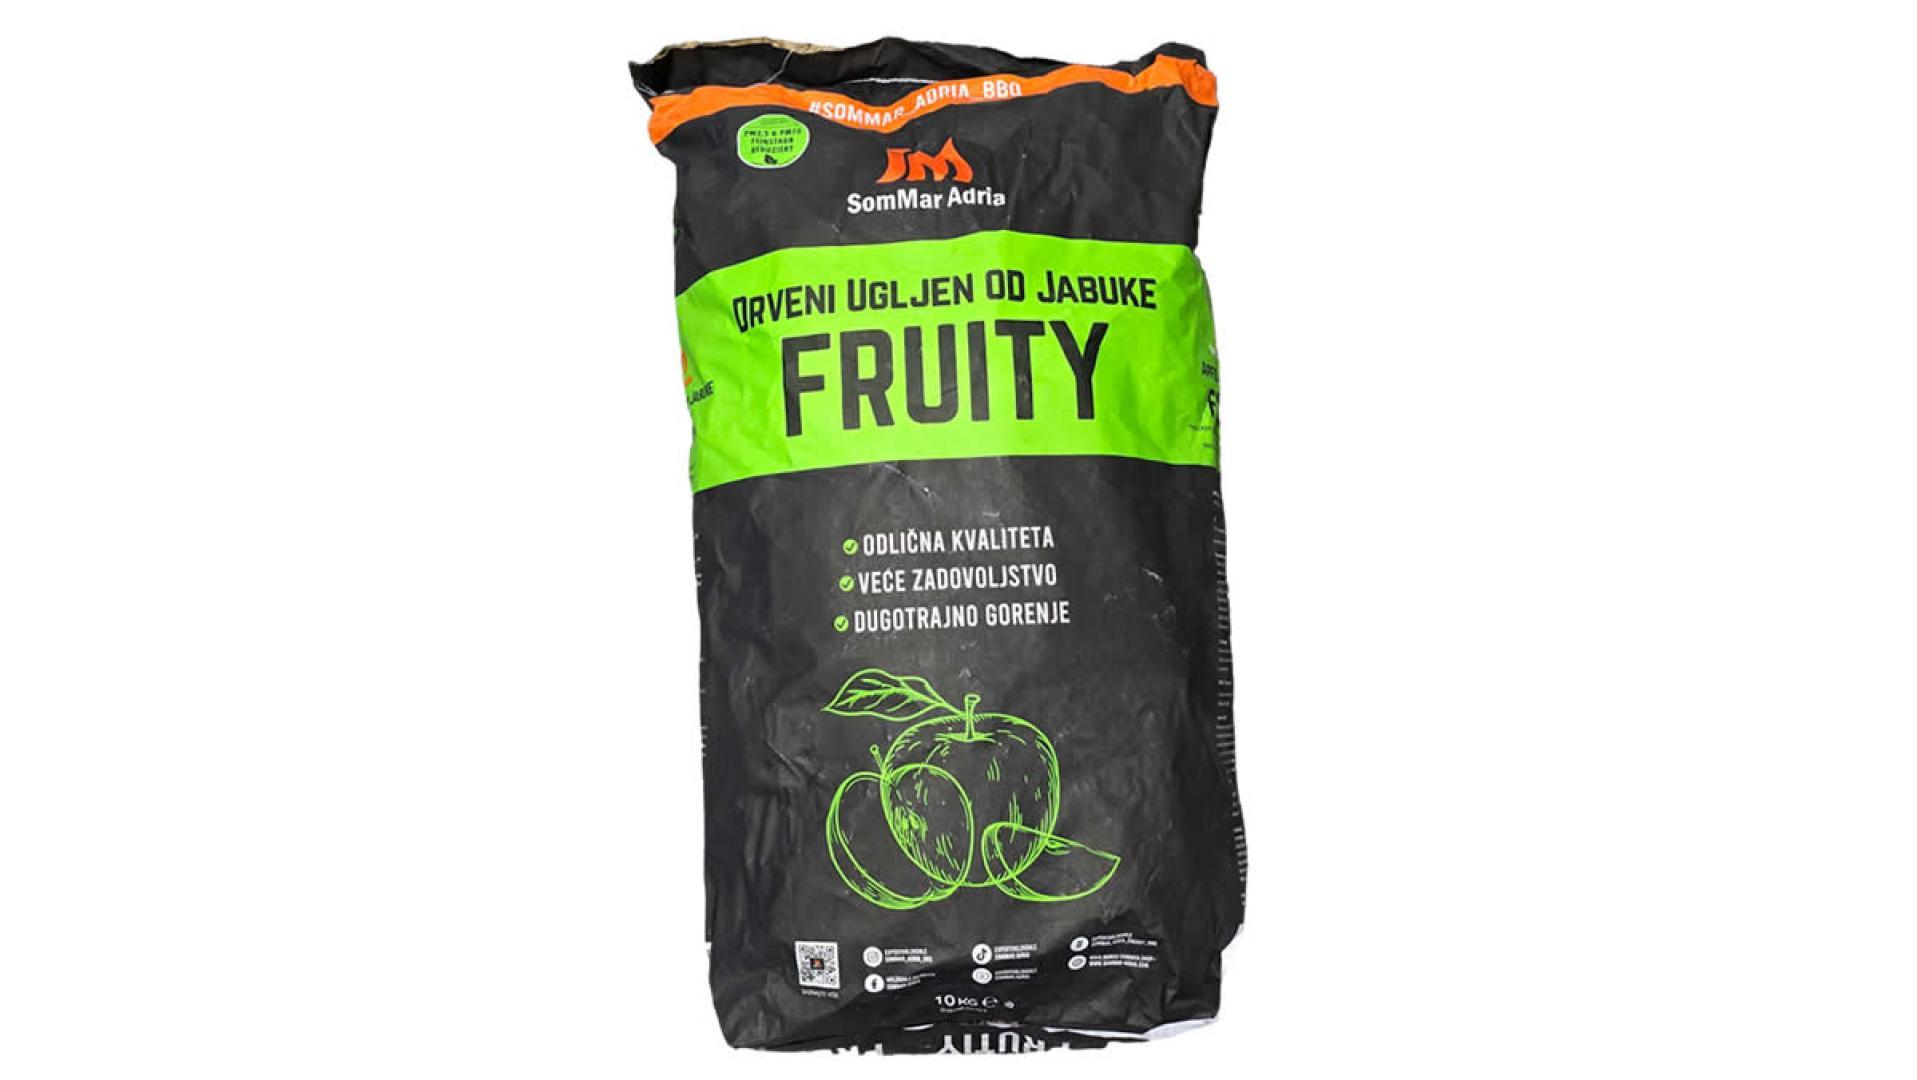 Drveni ugljen - Fruity 10 kg